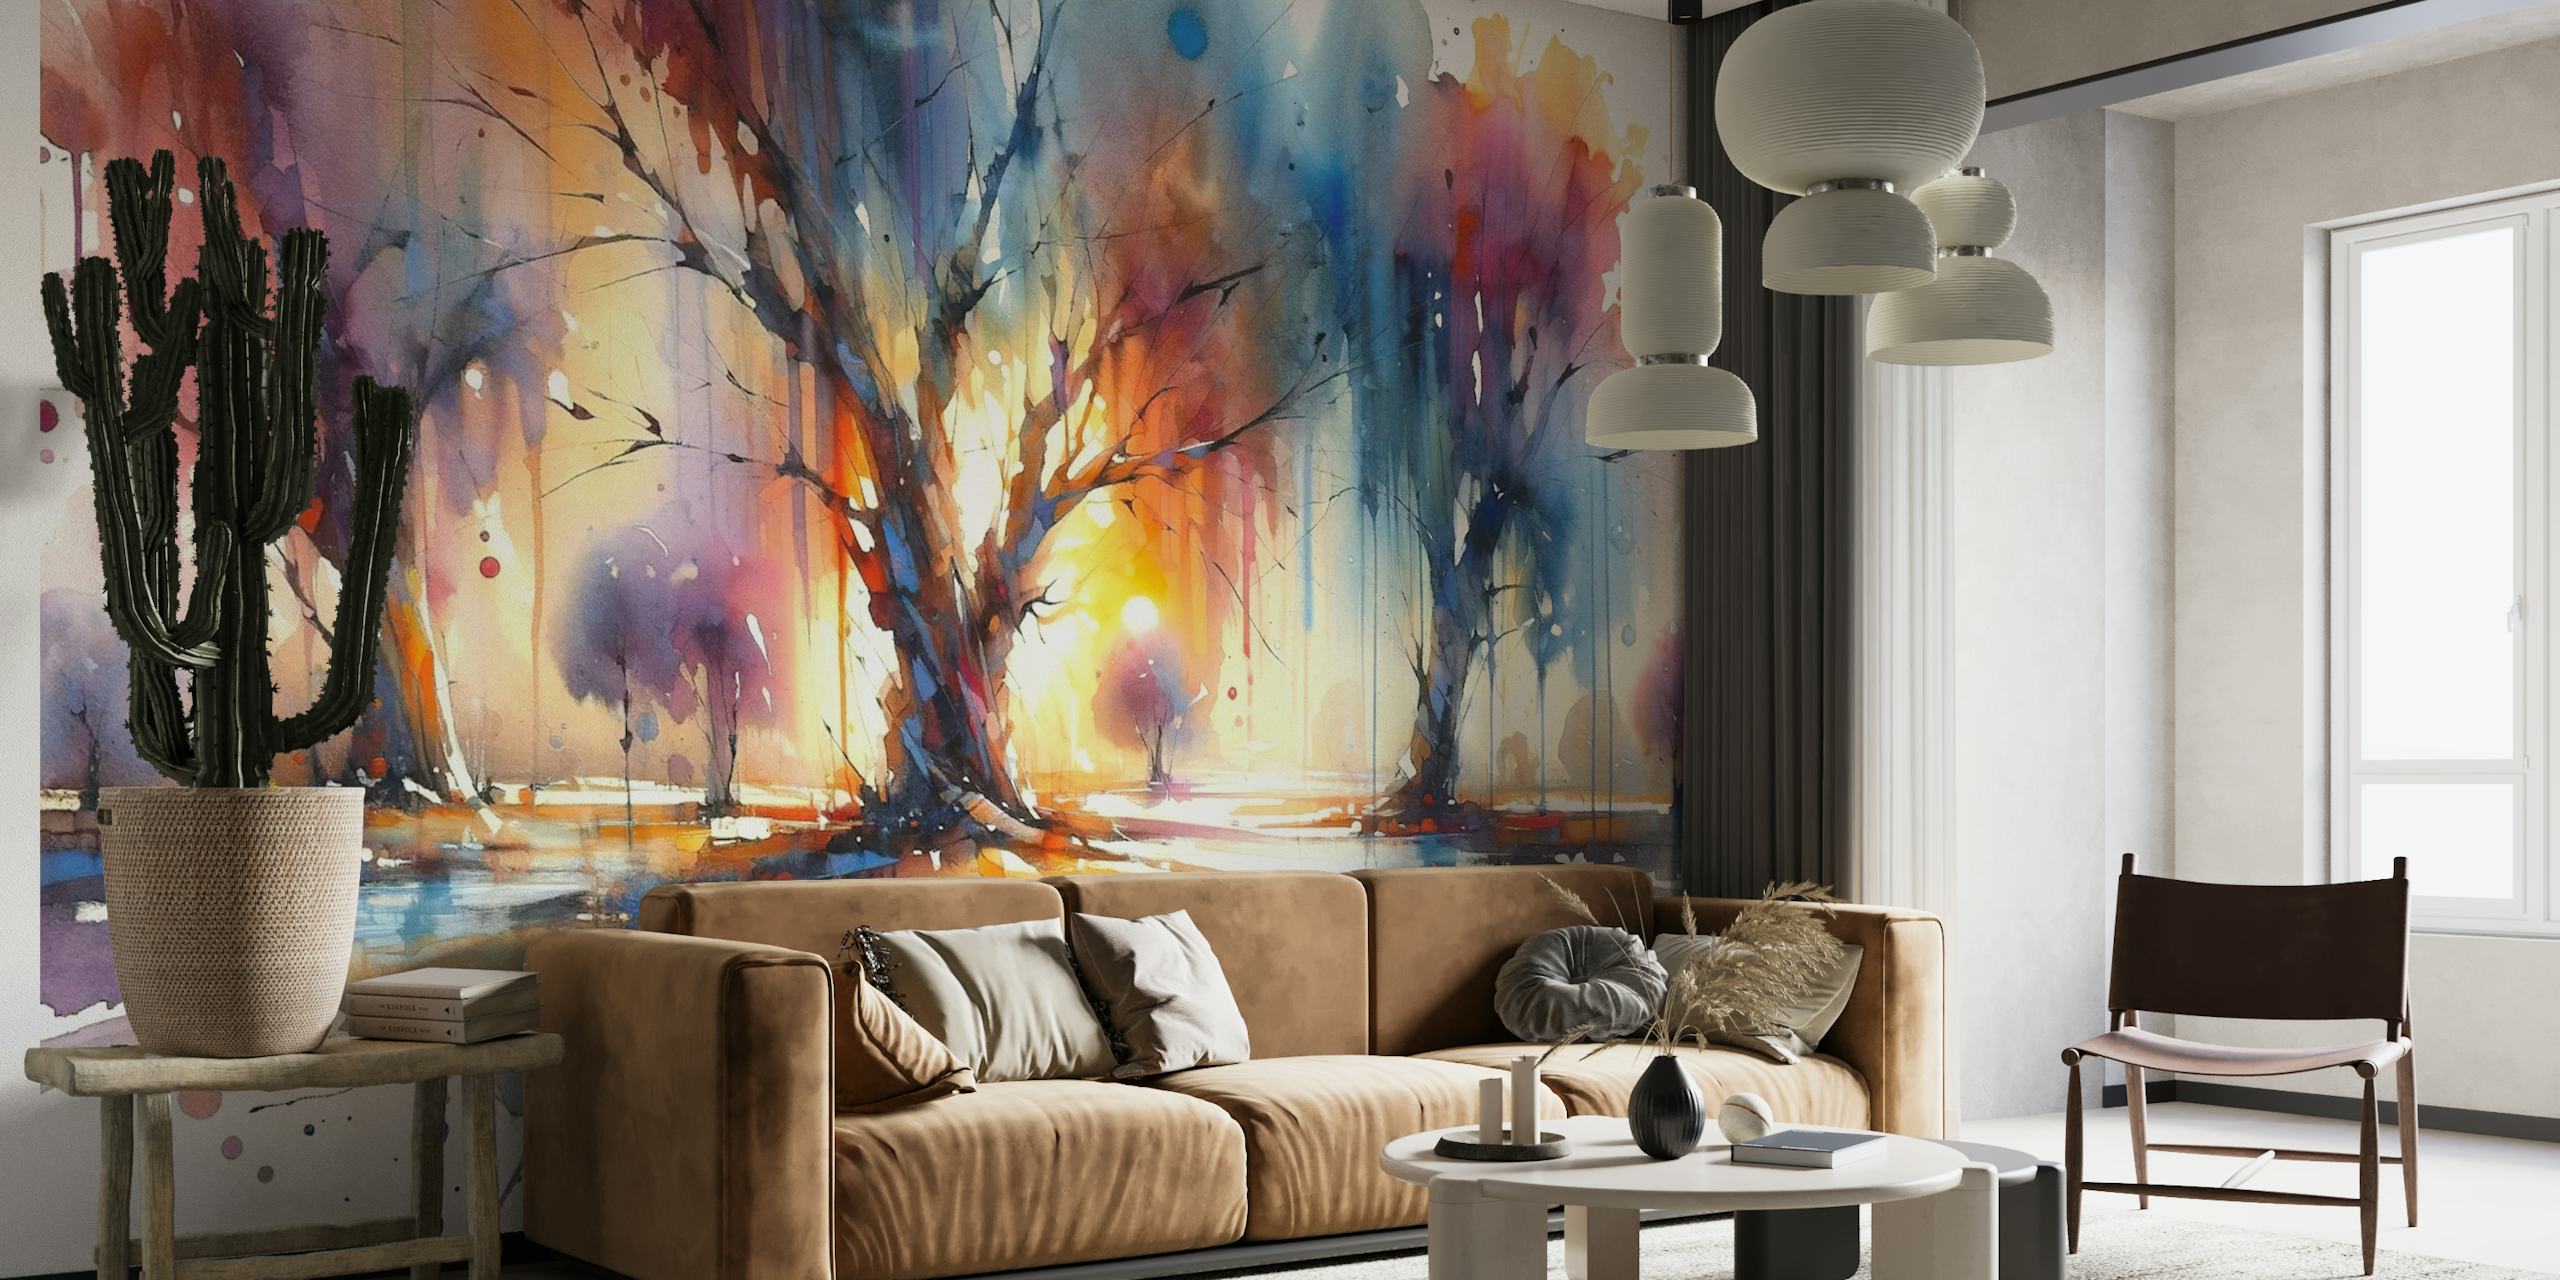 Apstraktni akvarel zidni mural šarenog drveća sa spektrom živih nijansi.